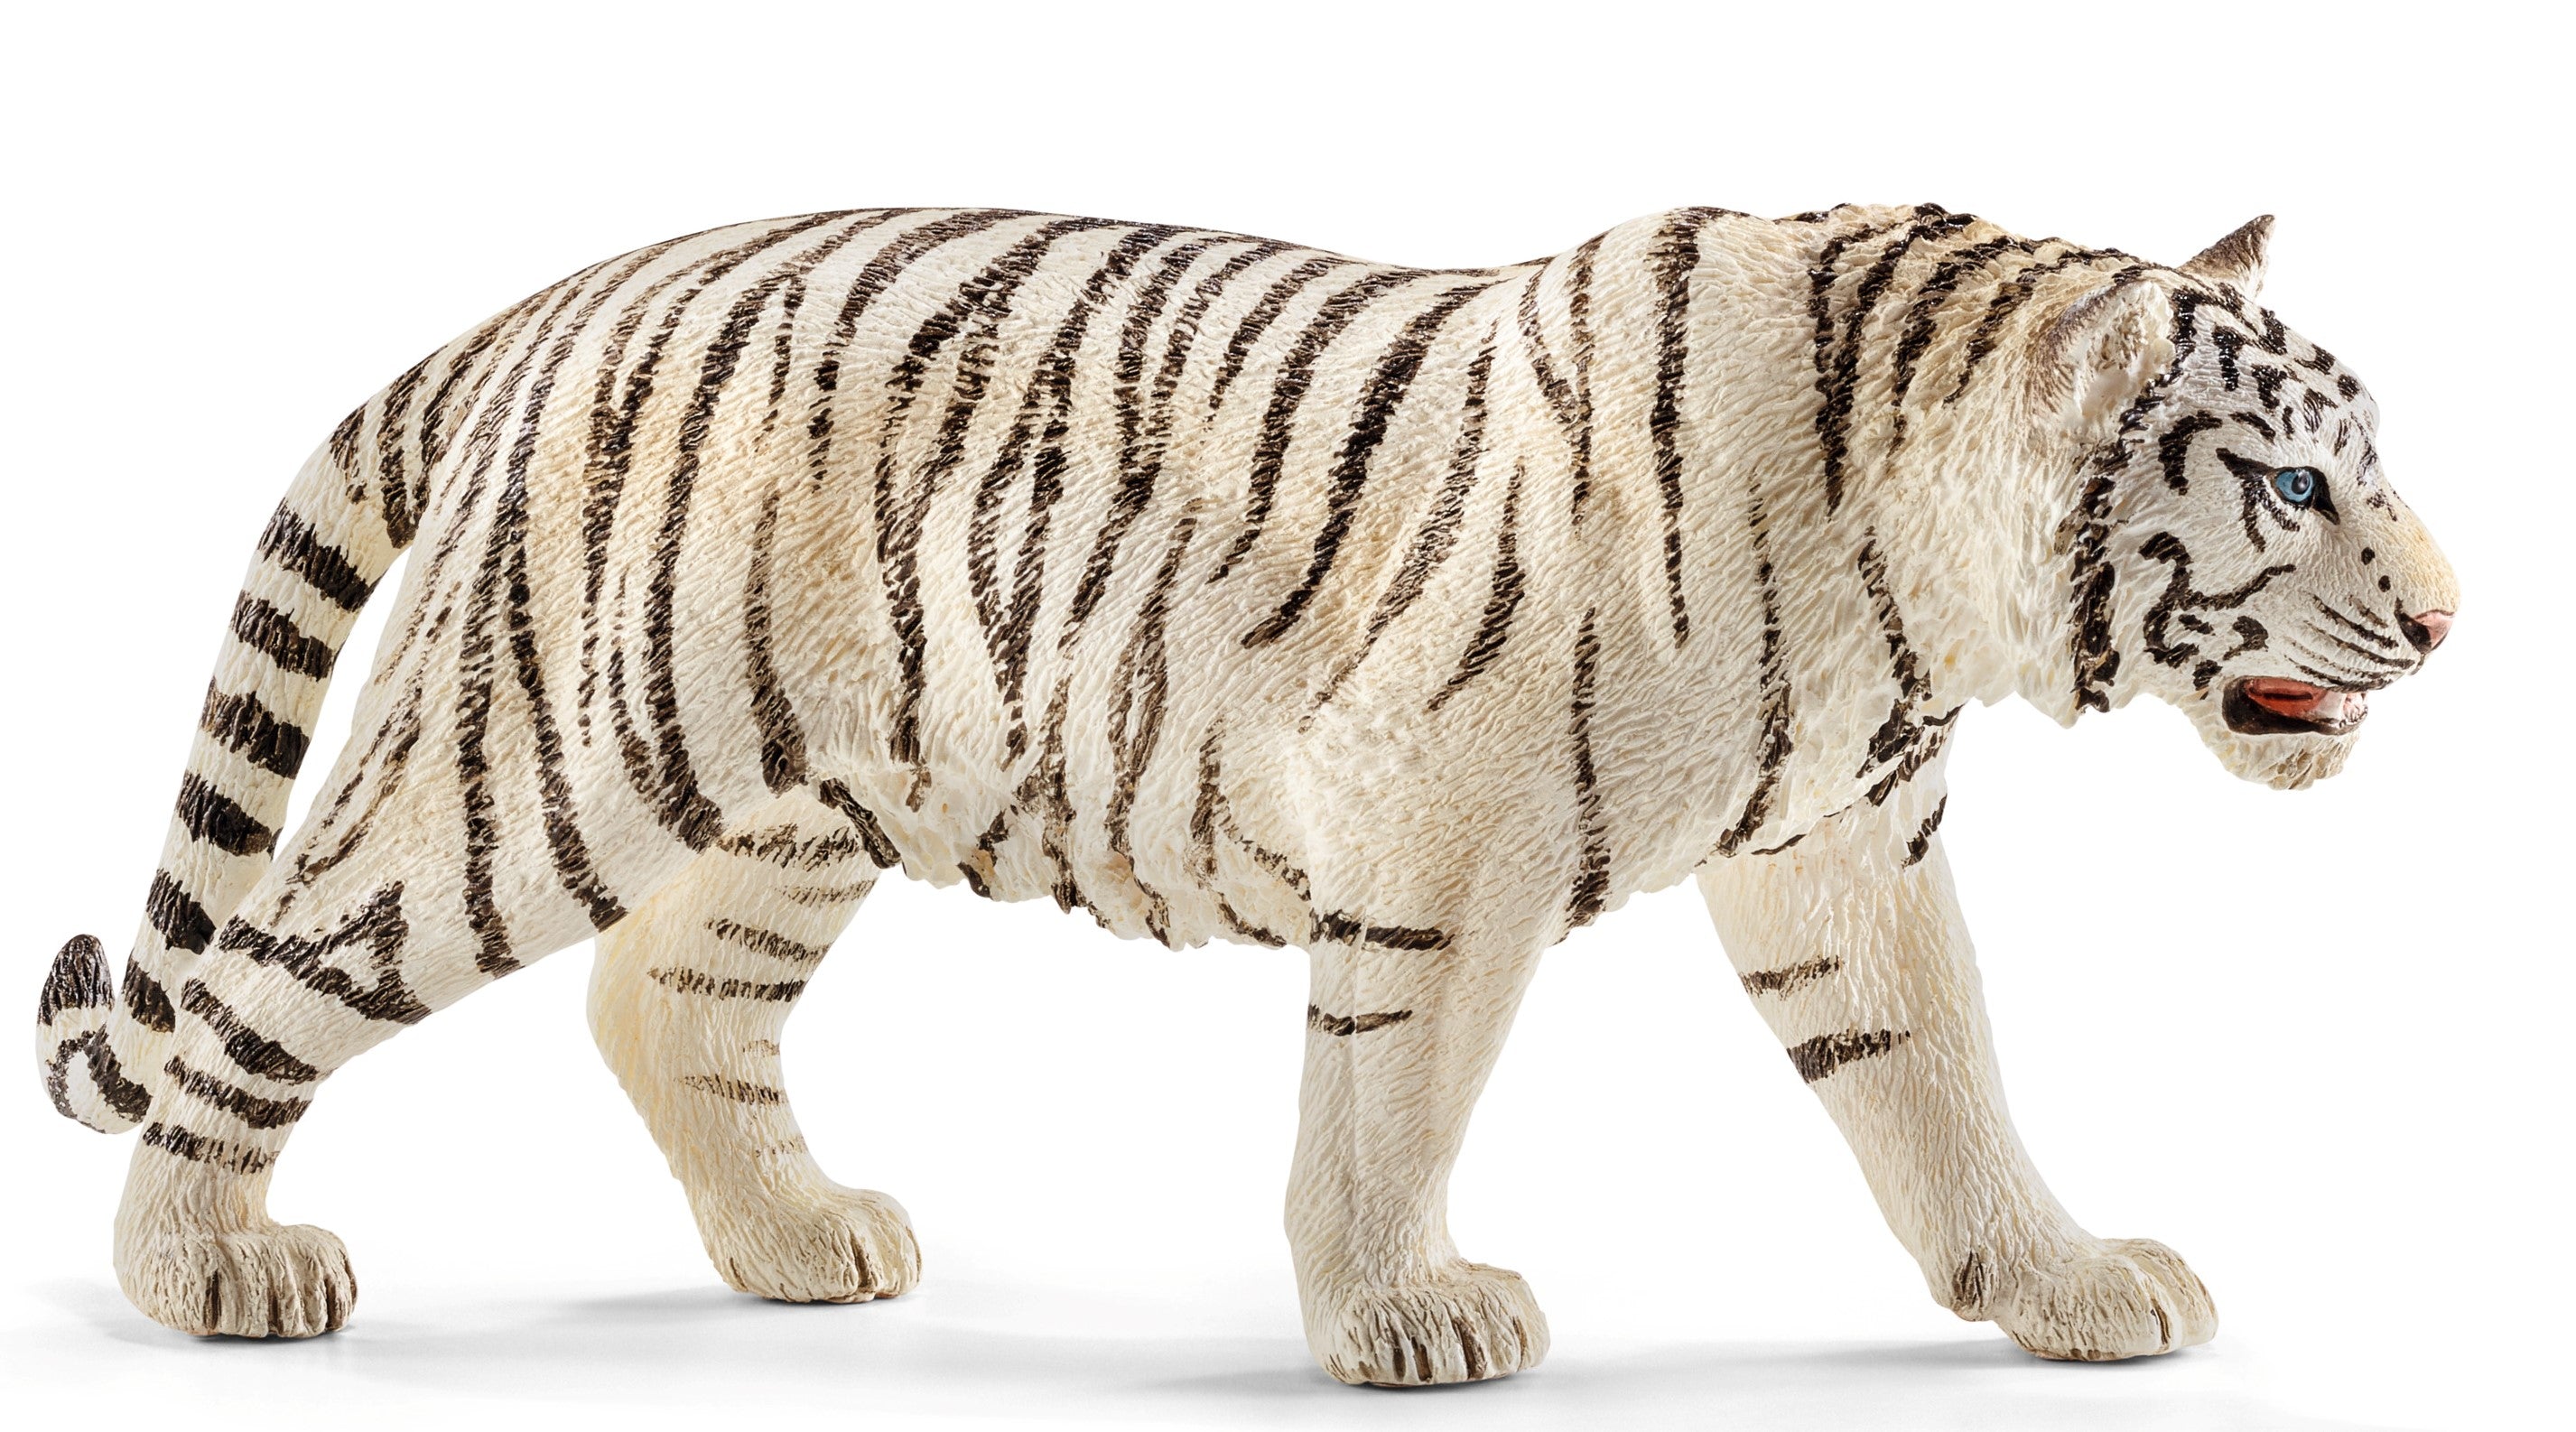 Bengali Tiger | 3D model